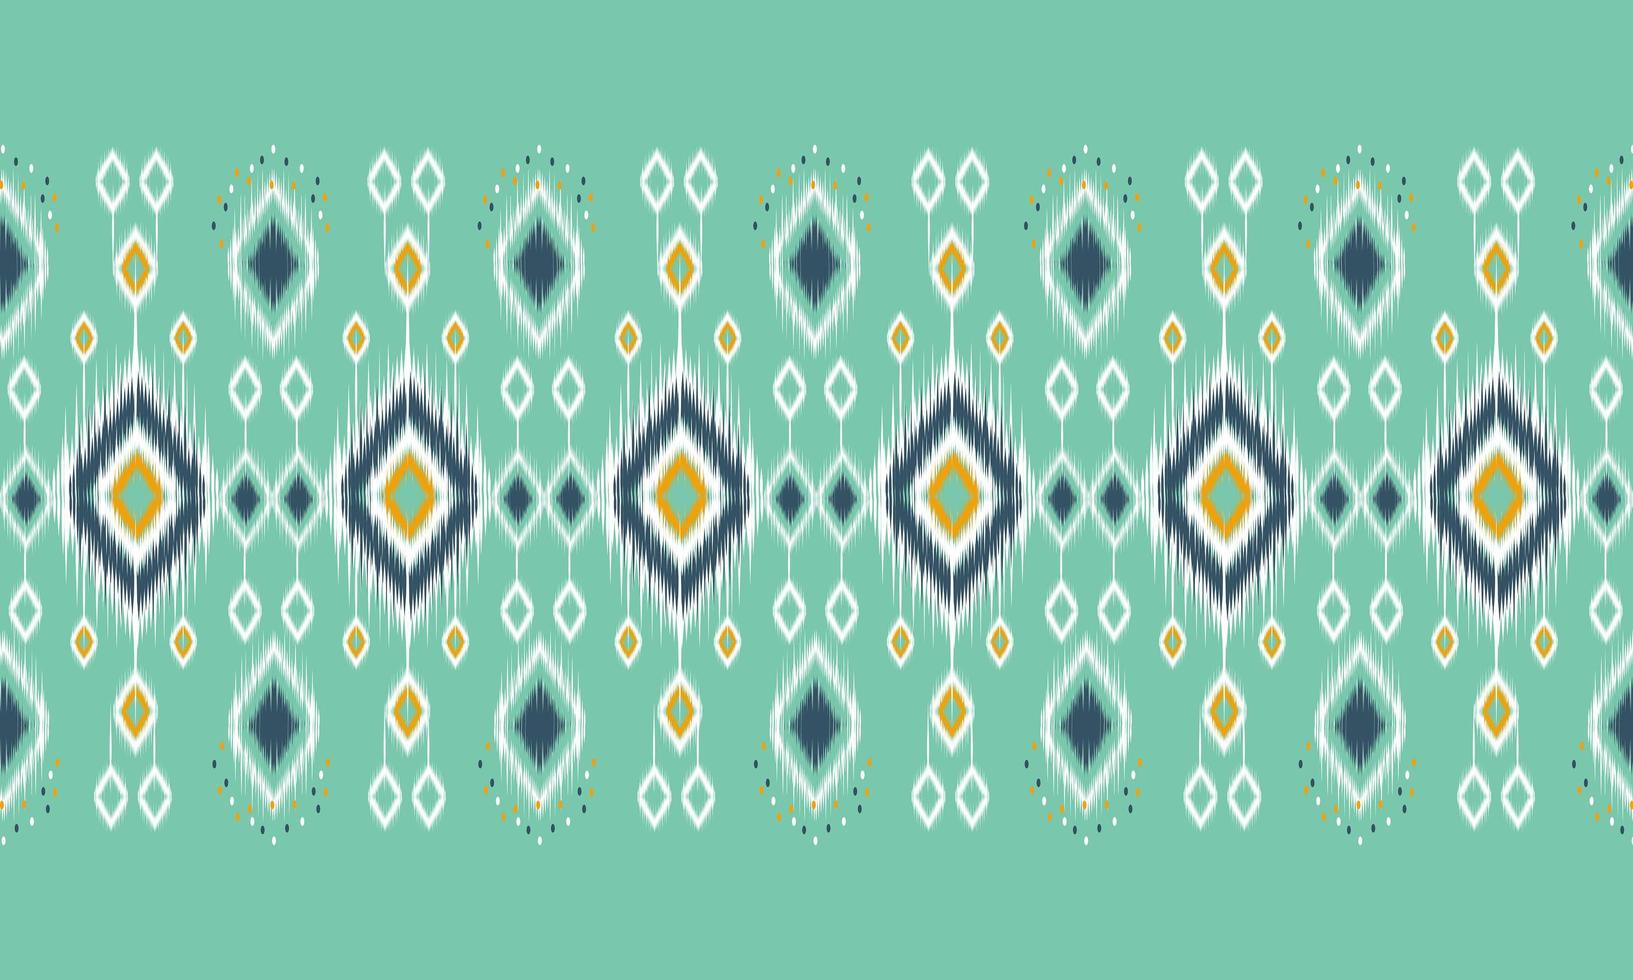 diseño tradicional del patrón de ikat oriental étnico geométrico para el fondo, alfombra, papel tapiz, ropa, envoltura, batik, tela, estilo de bordado de ilustración vectorial. vector